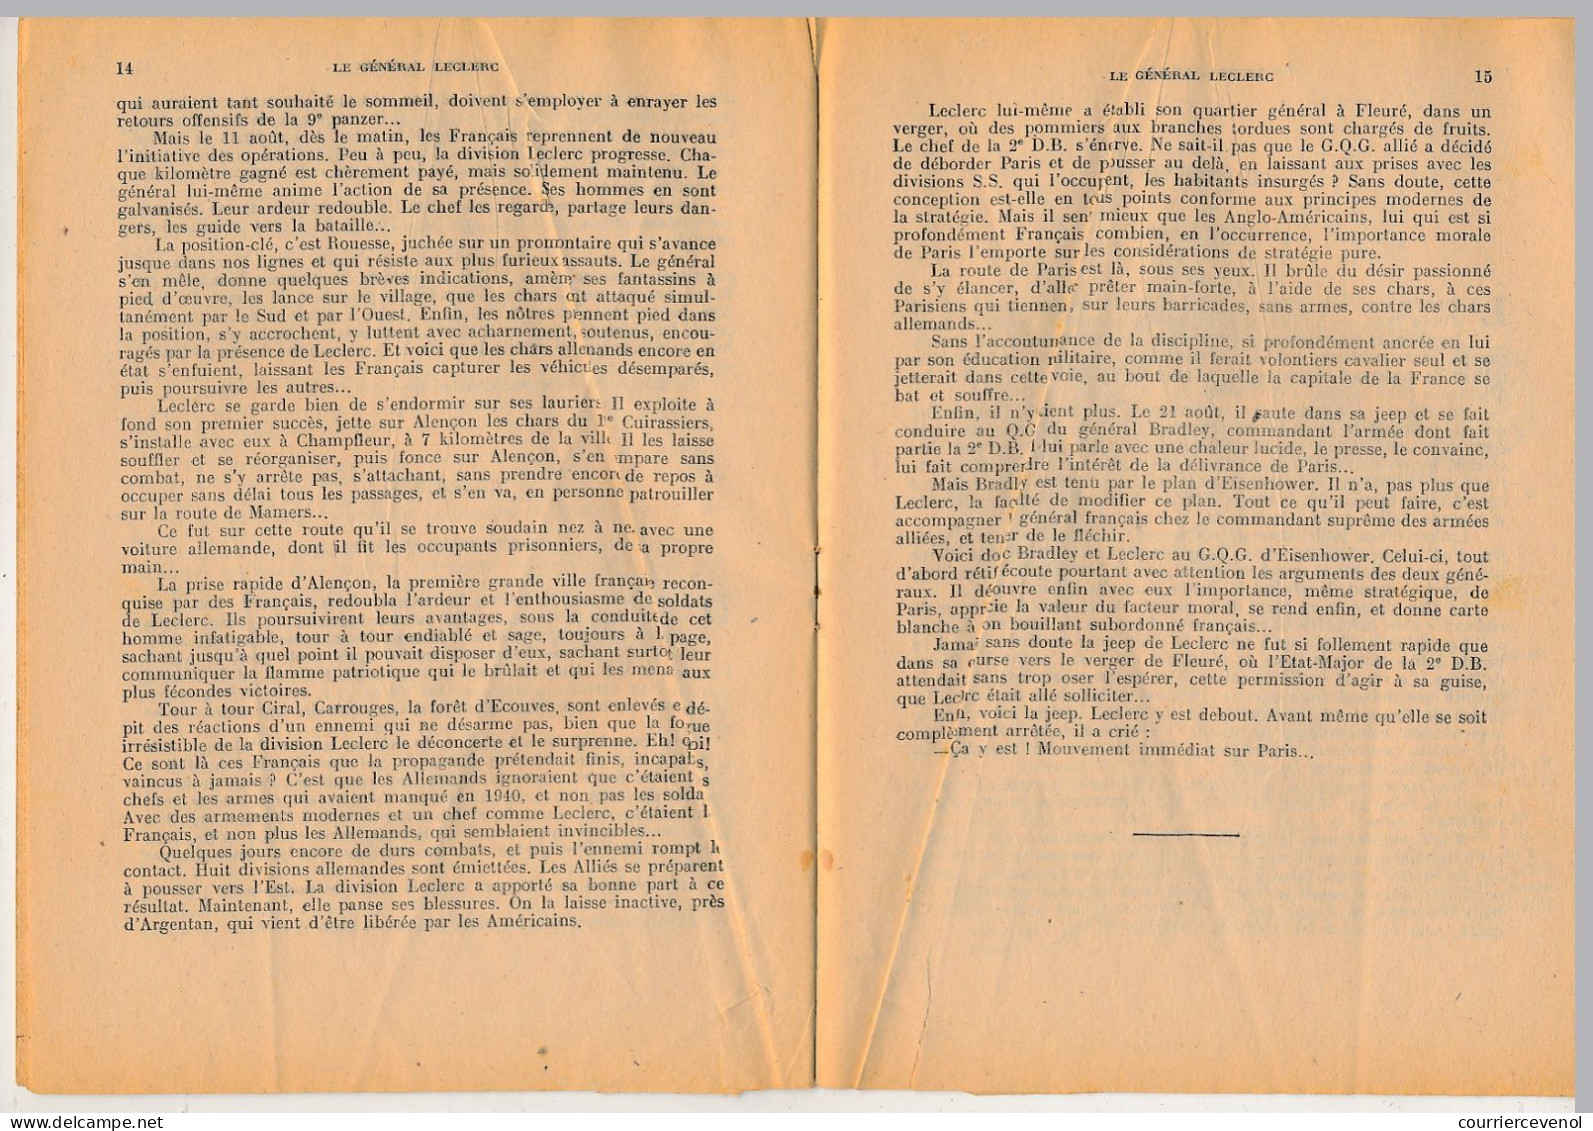 Collection "PATRIE" - Le Général Leclerc - Léon Groc - Editions Rouff, Paris, 1948 - War 1939-45